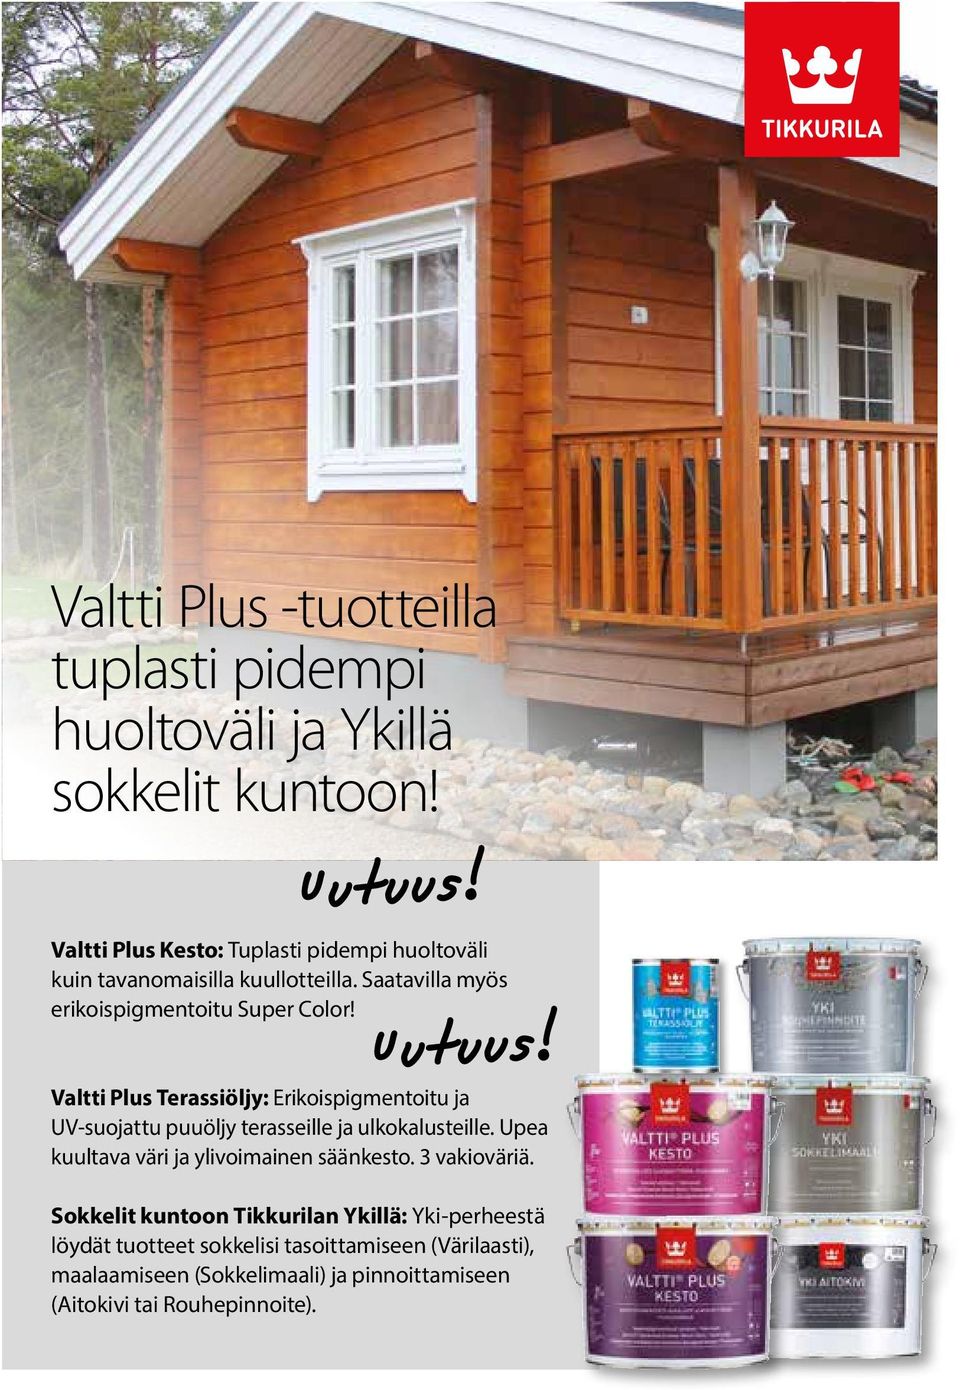 Valtti Plus Terassiöljy: Erikoispigmentoitu ja UV-suojattu puuöljy terasseille ja ulkokalusteille.